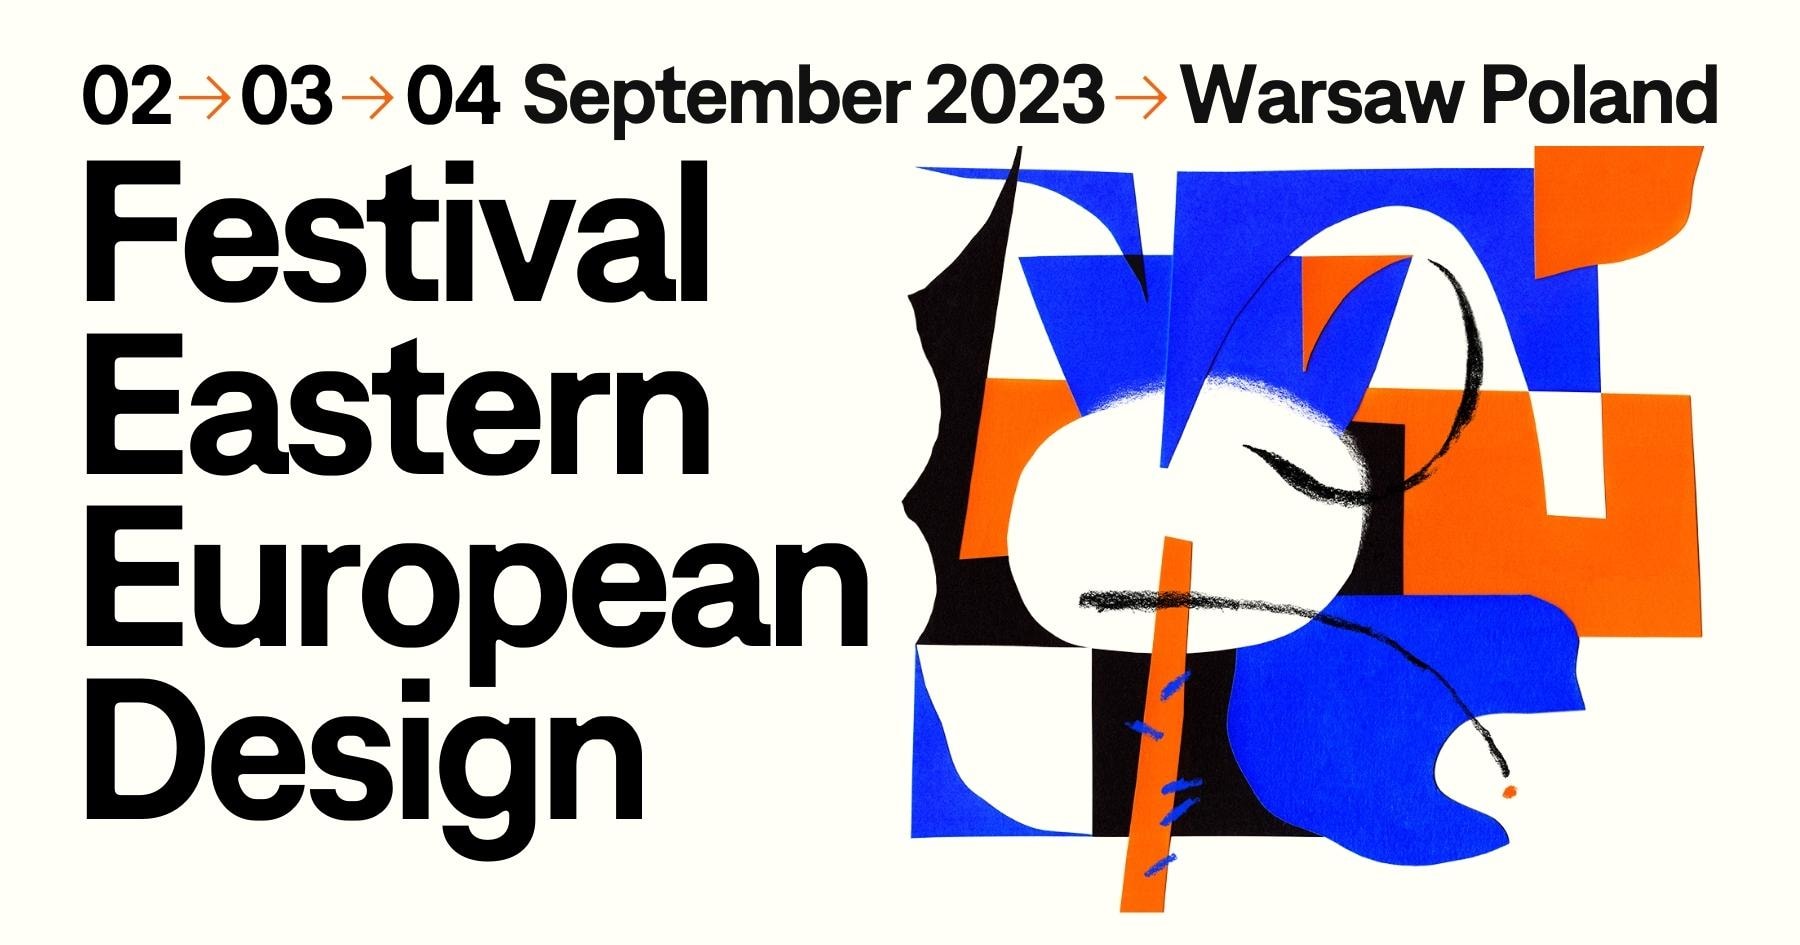 Festival Eastern European Design